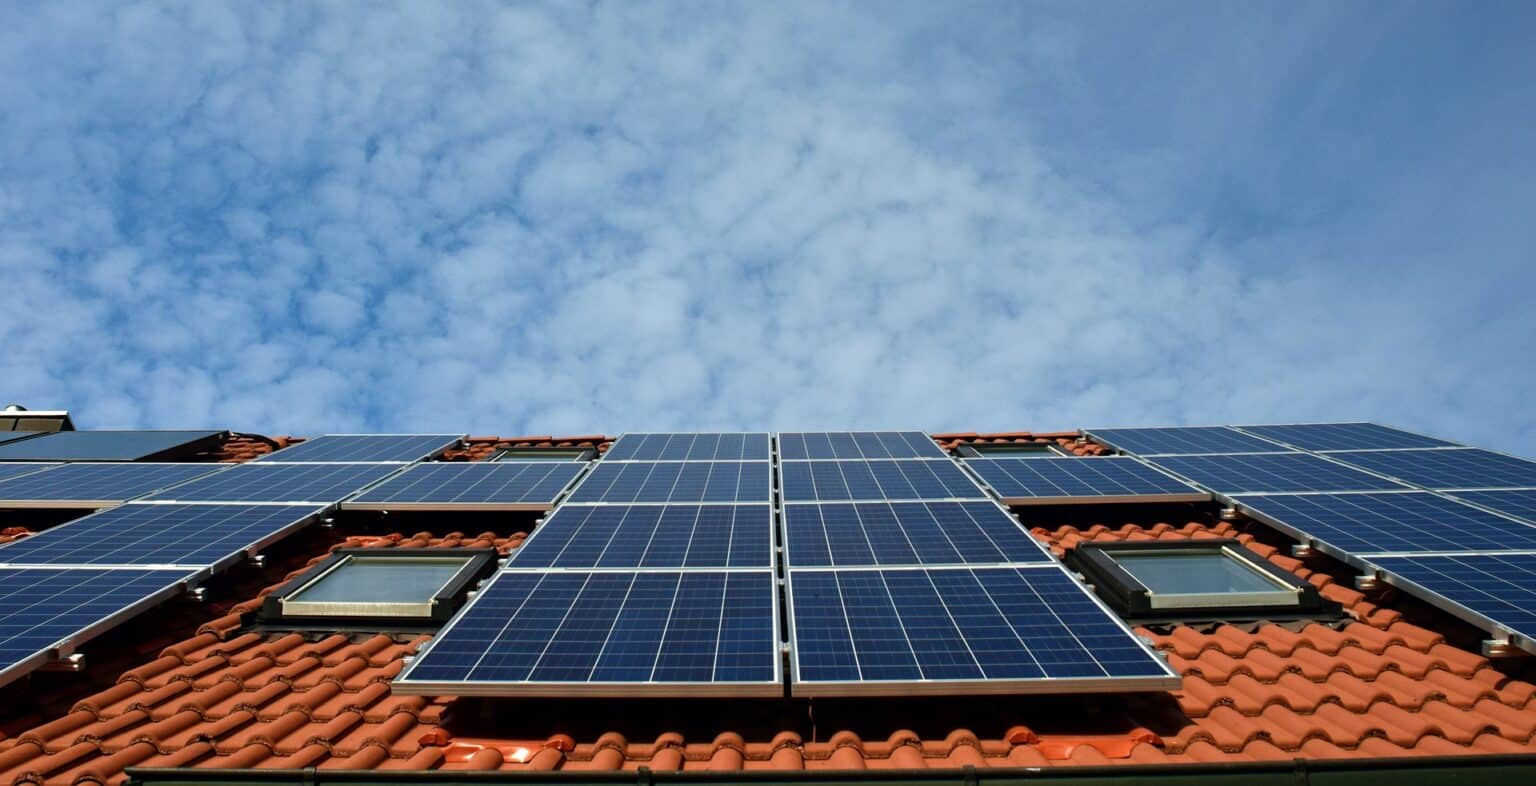 Cómo funcionan las placas solares fotovoltaicas? - Iberdrola